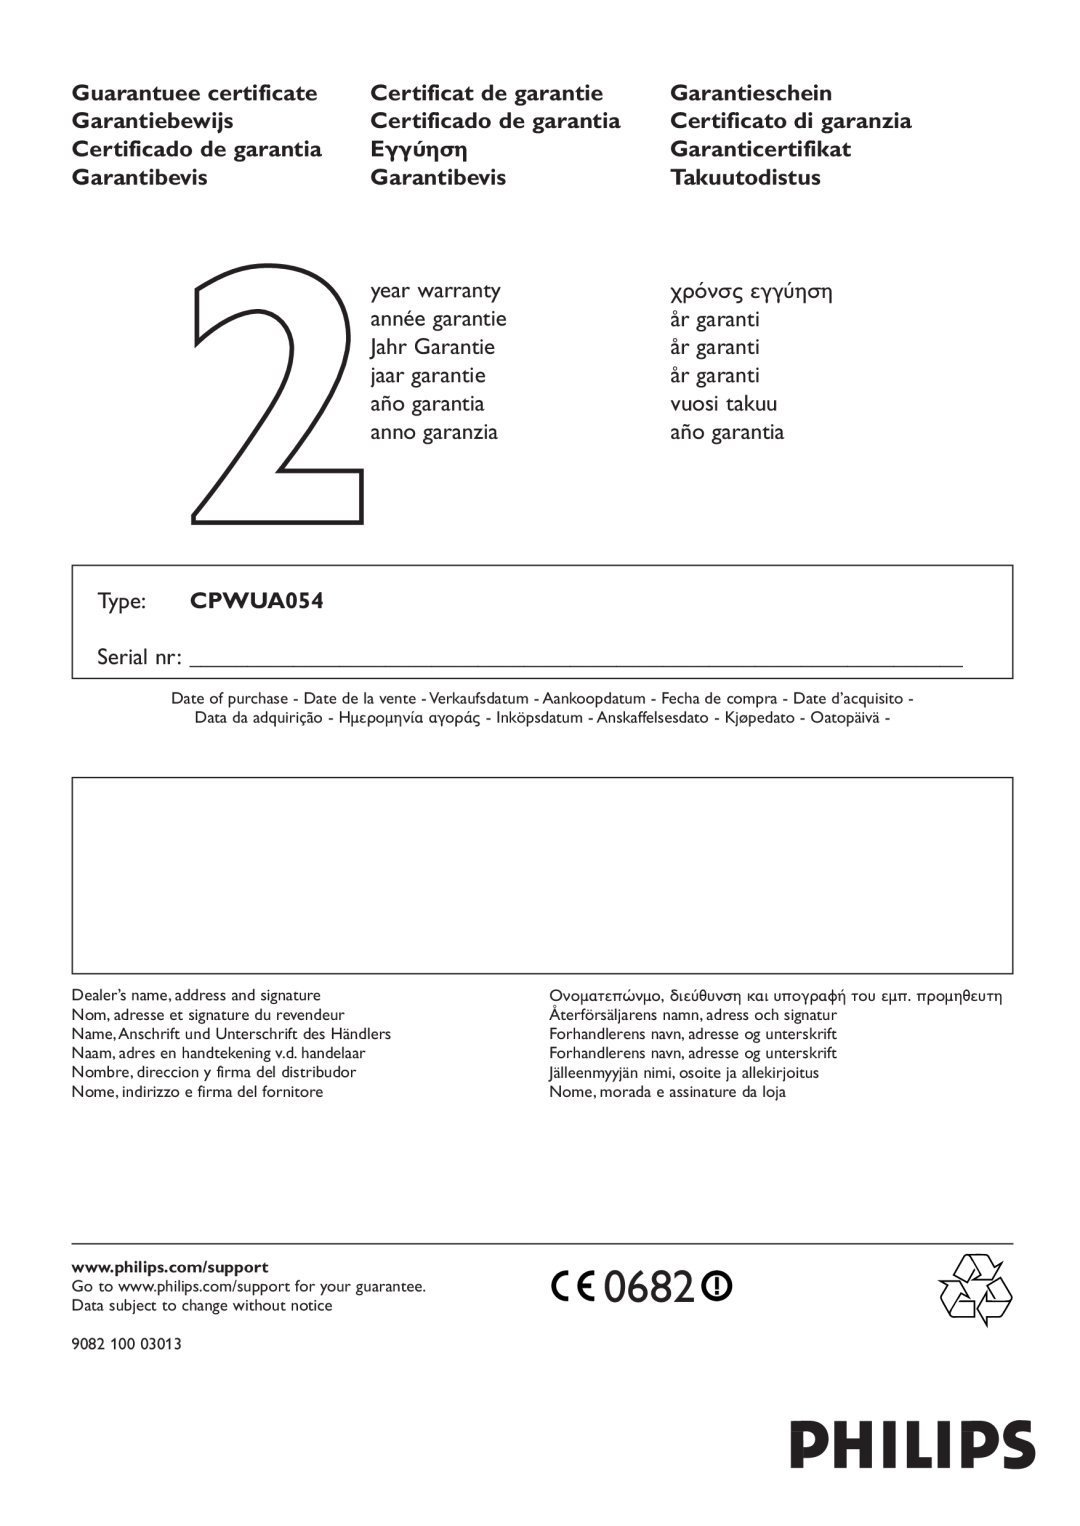 Philips CPWUA054 manual Serial nr, Inköpsdatum - Anskaffelsesdato - Kjøpedato - Oatopäivä 